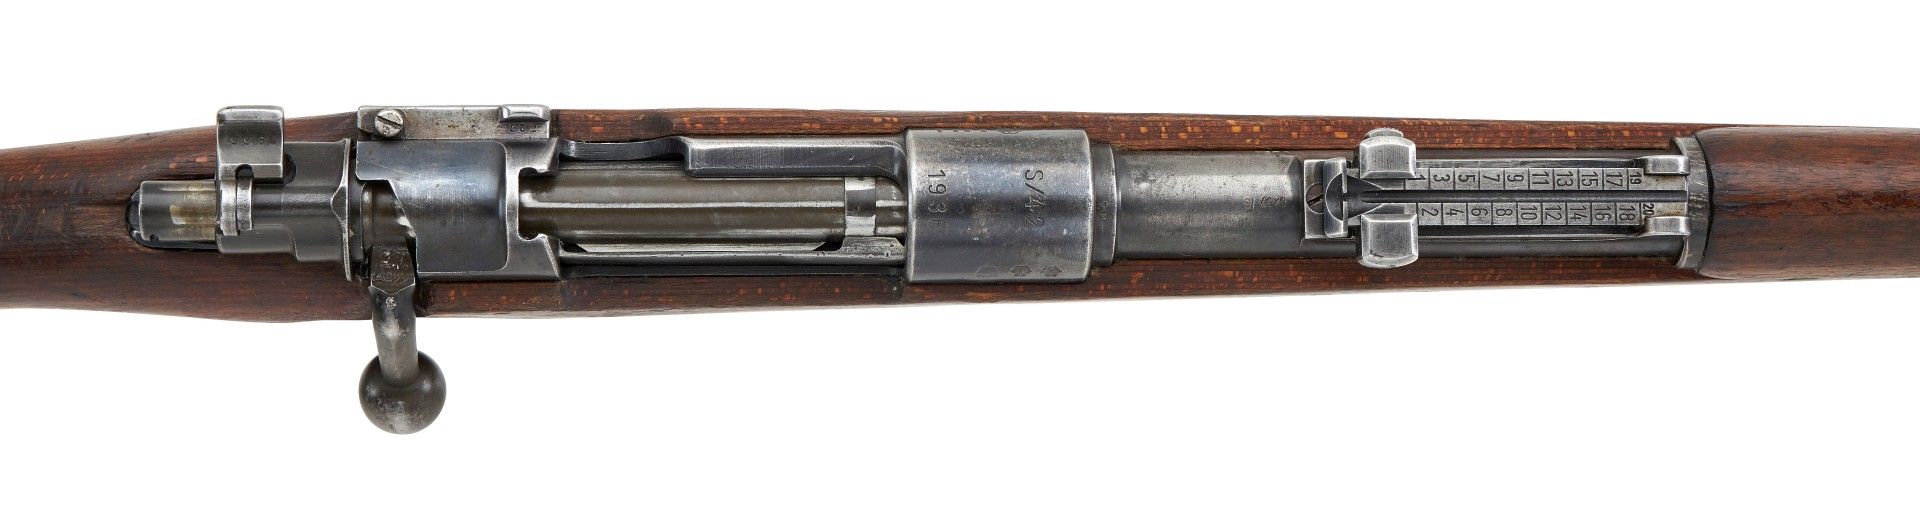 Repetierbüchse Mod.: Karabiner K 98k Hersteller: S/42 1936 (Fa. Mauser Oberndorf a.N.) Kal.: 8 ... - Image 2 of 3